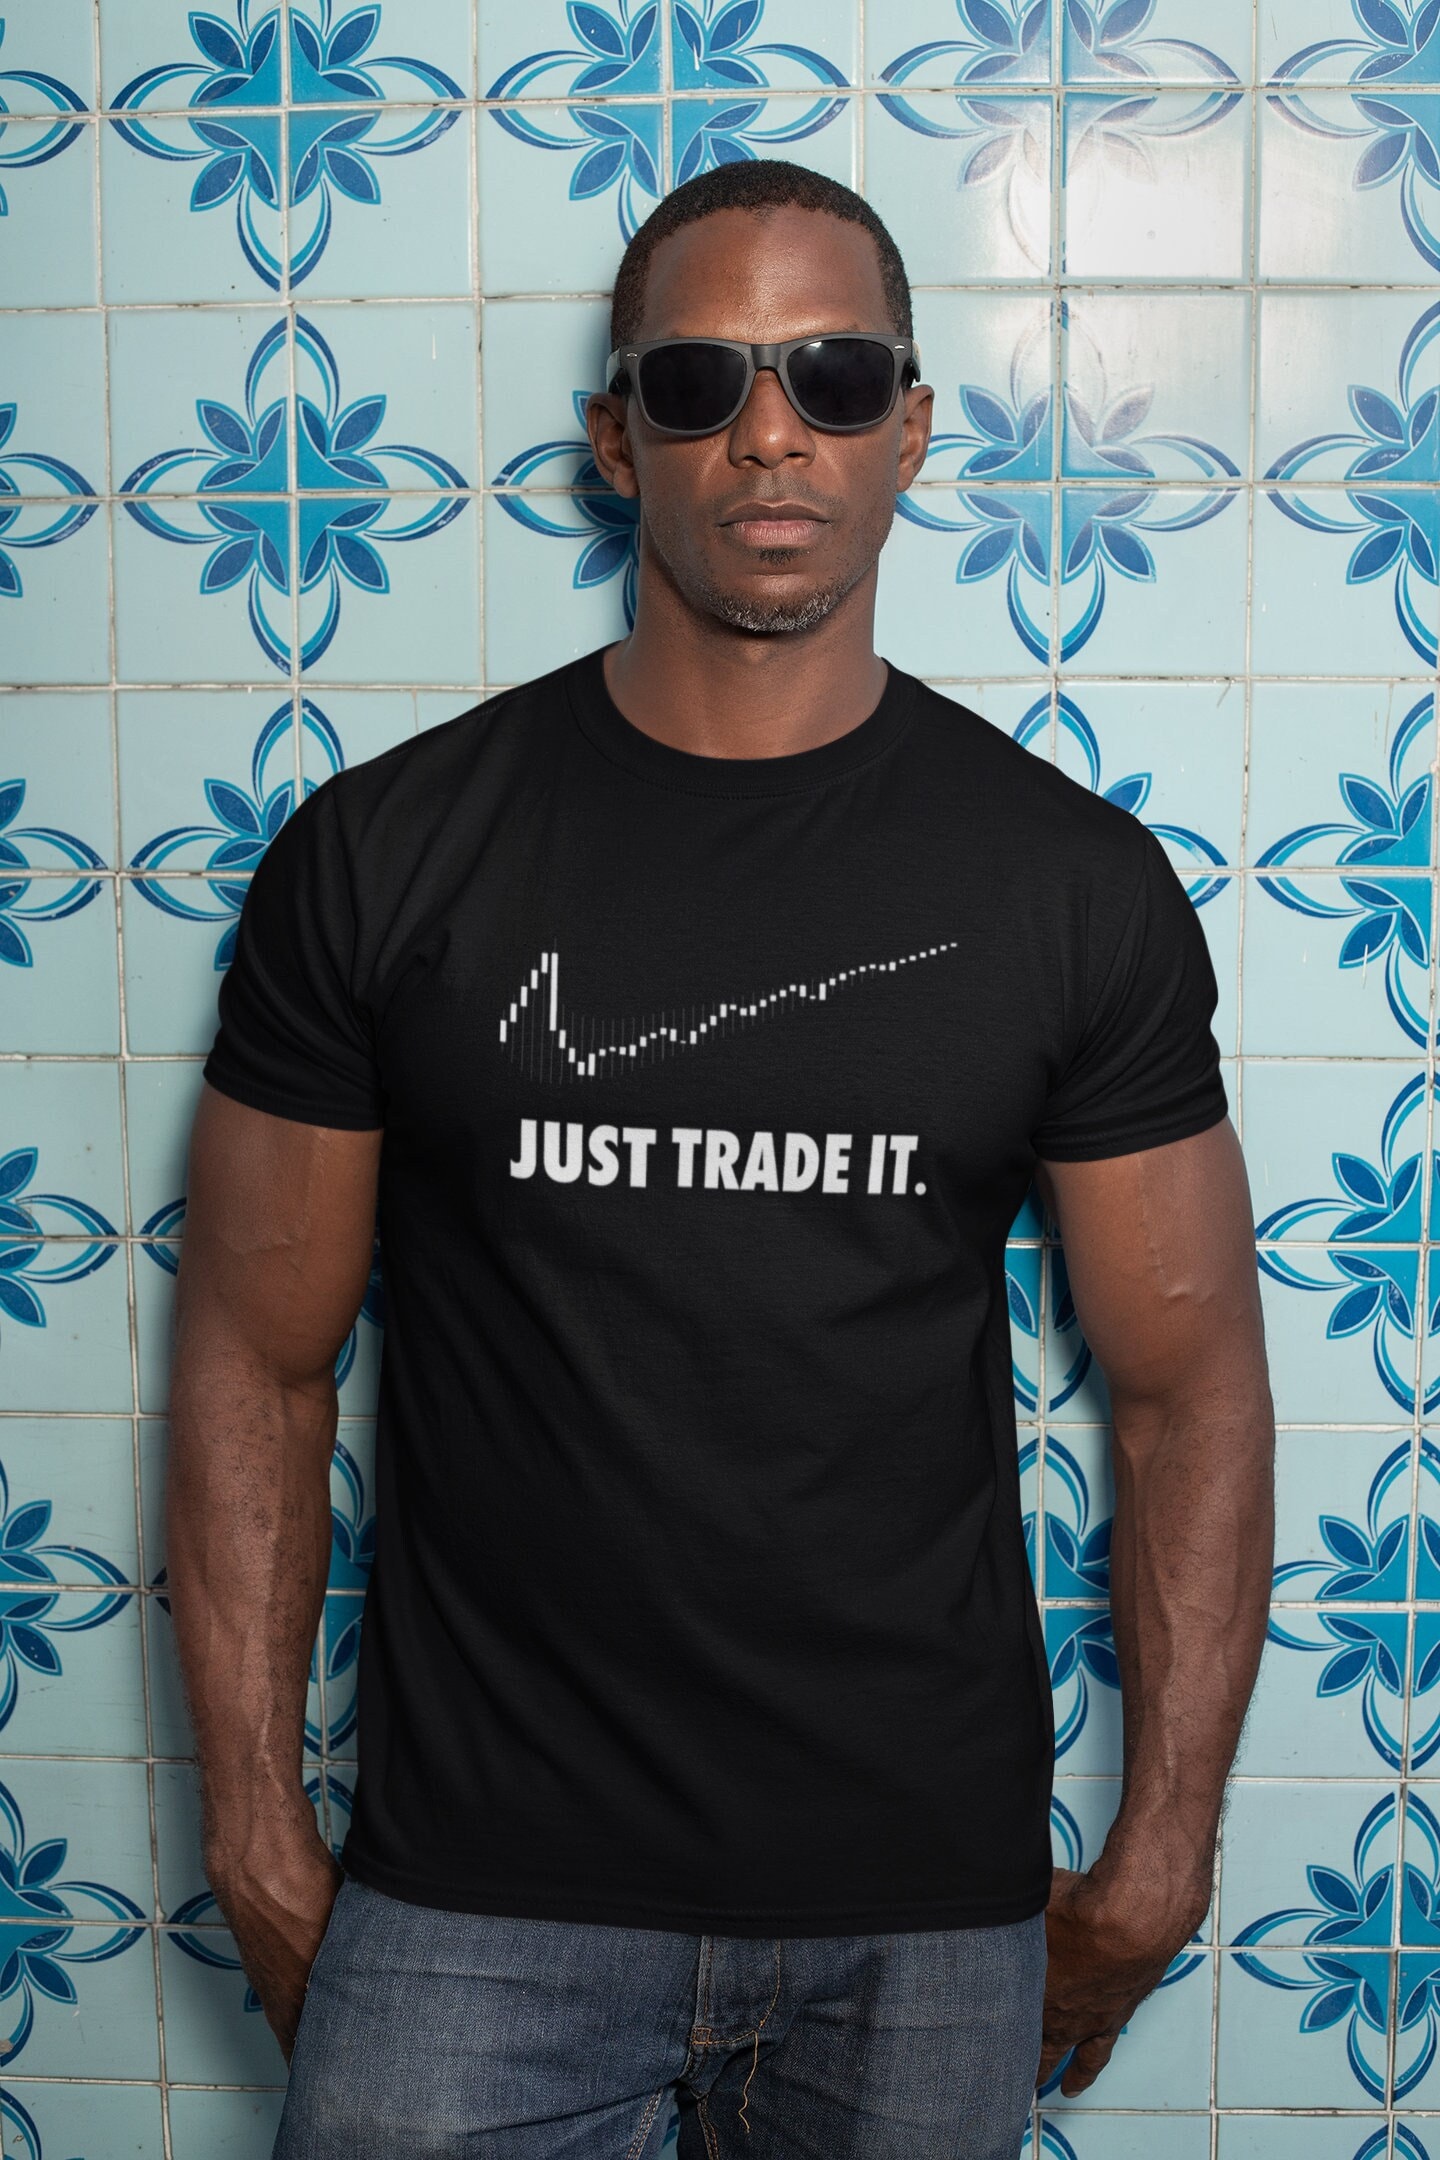 du er Vedholdende At blokere Just Trade It T-shirt - Etsy